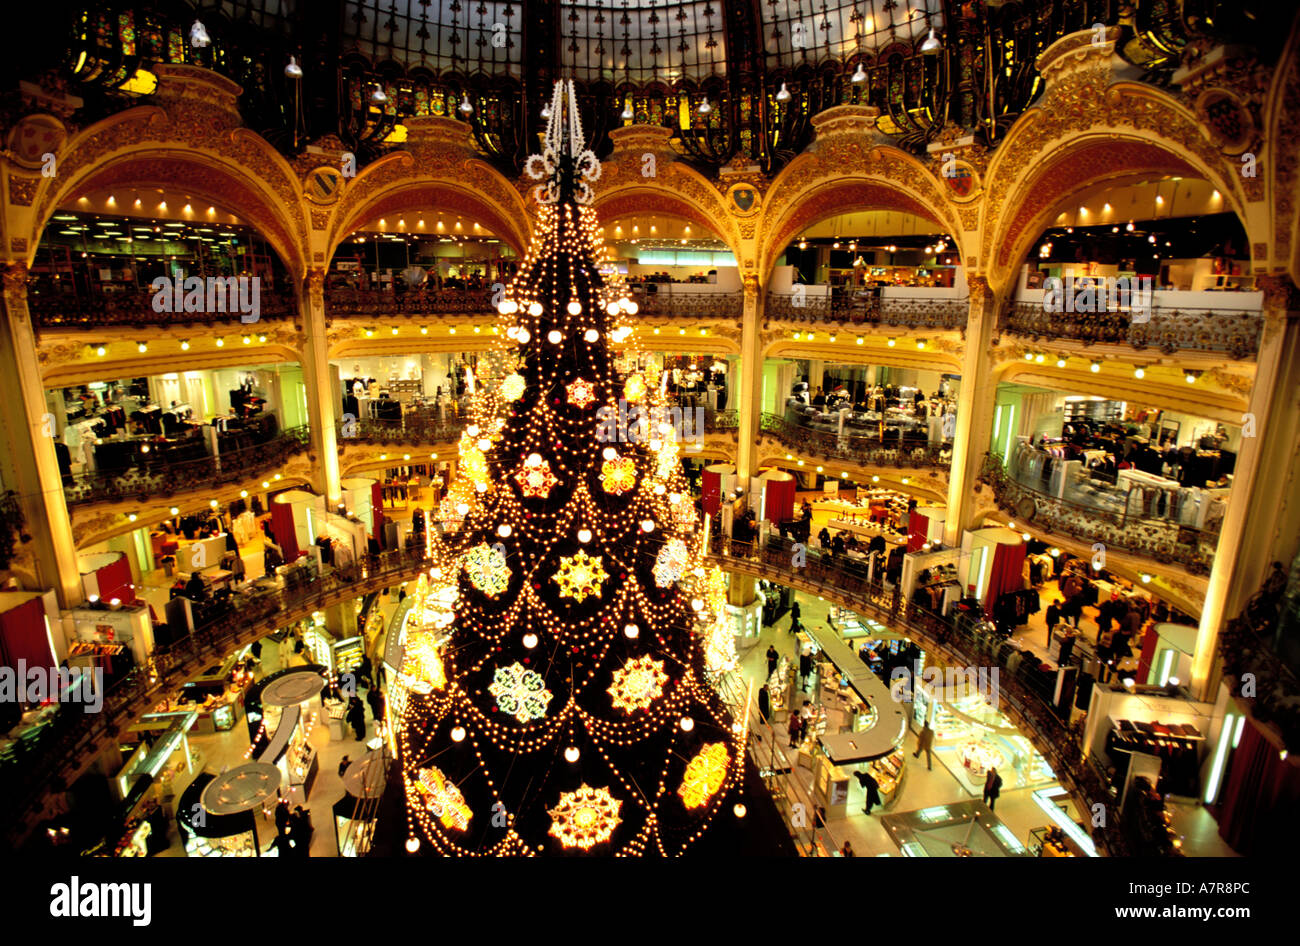 France, Paris, Galeries Lafayette, Christmas decoration Stock ...